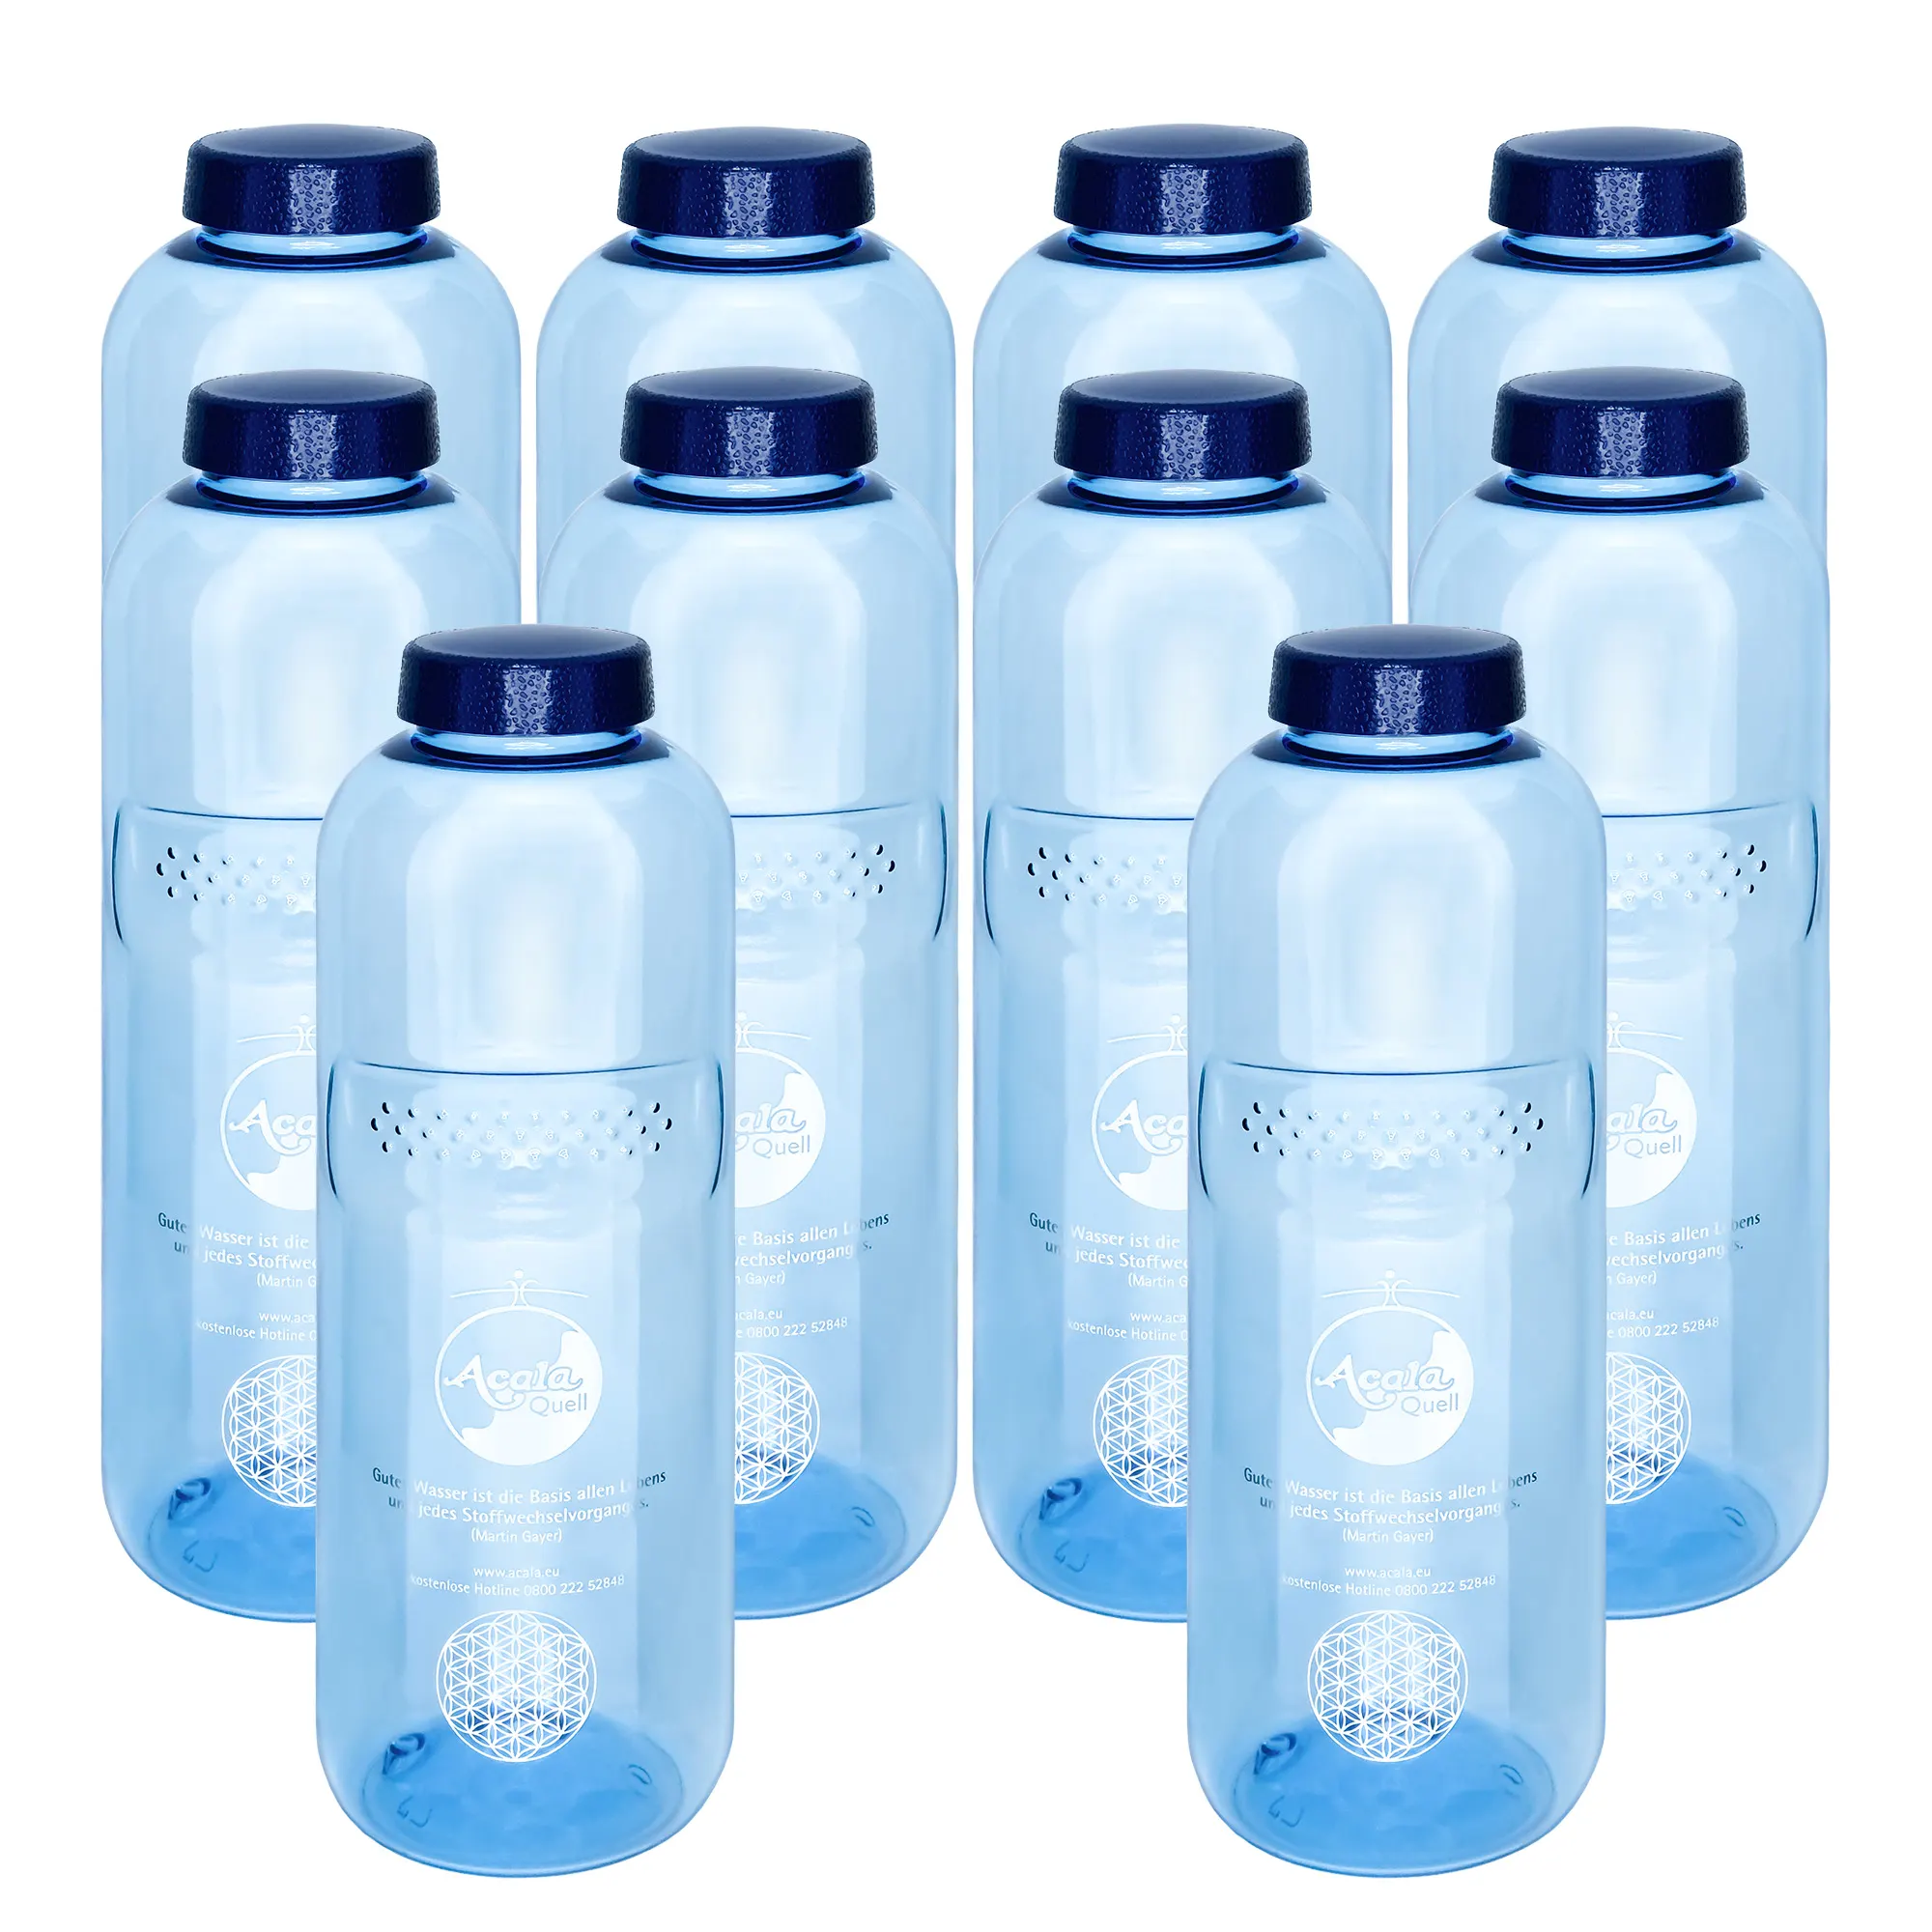 Zu sehen sind zehn blaue Tritan Trinkflaschen Grip mit dunkelblauem Schraubdeckel vor weißem Hintergrund. Man sieht ein silbernes Acala Logo und die Blume des Lebens auf den Flaschen.